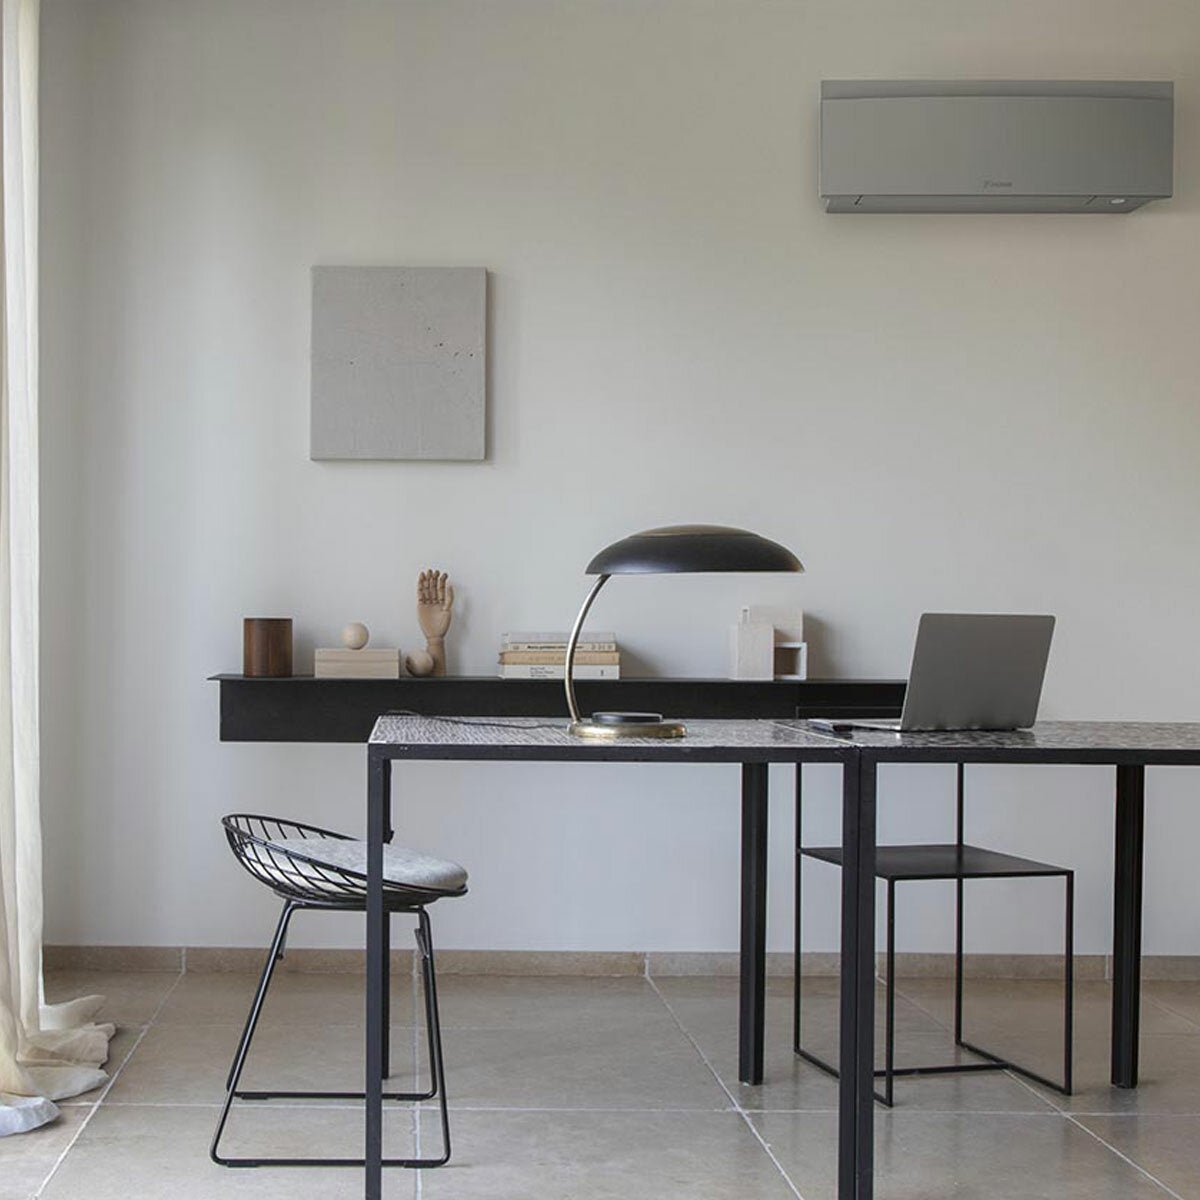 Daikin Emura air conditioner 3 split panels 9000+9000+12000+18000 BTU inverter A++ wifi outdoor unit 7.4 kW Silver